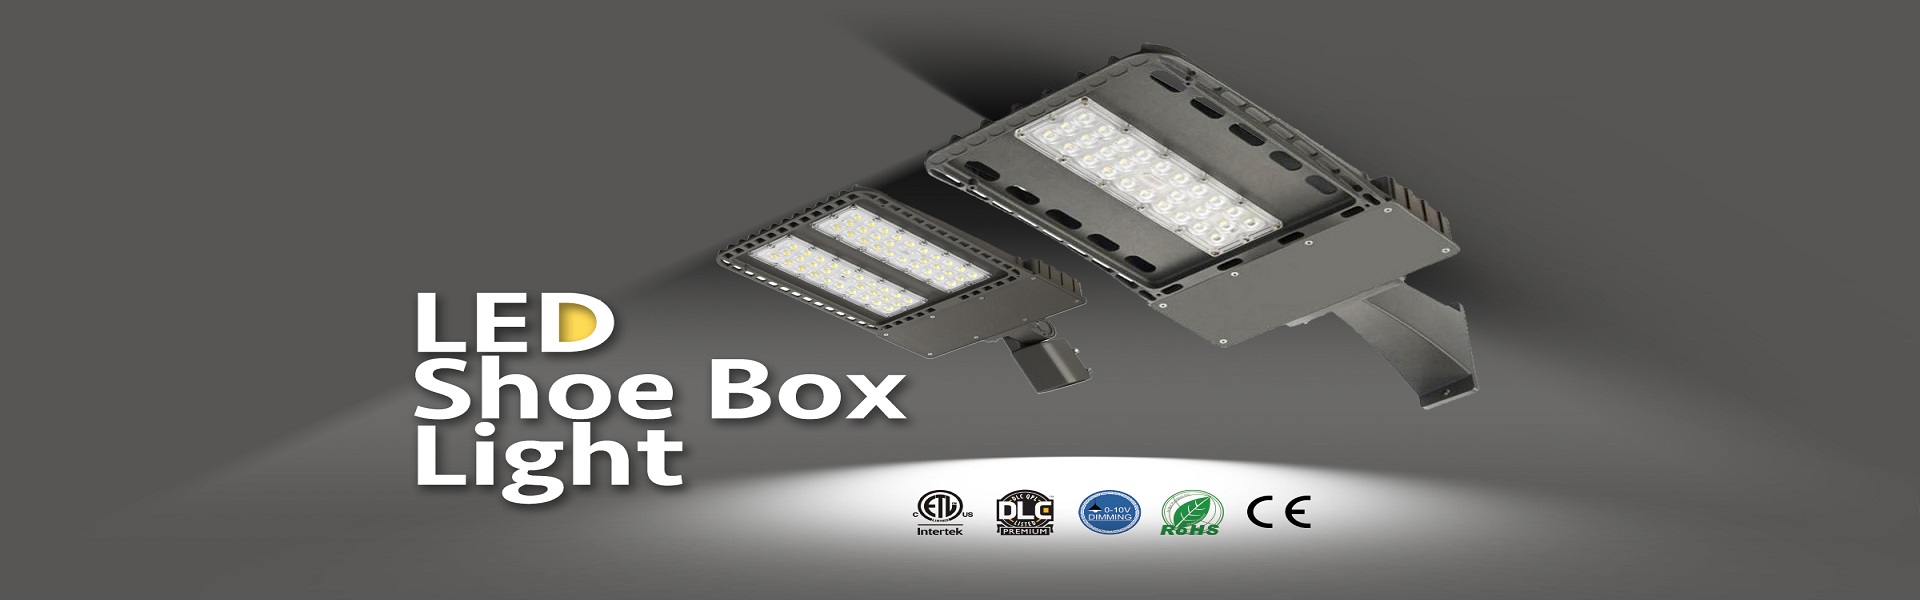 I-15-LED-Shoe-Box-Light